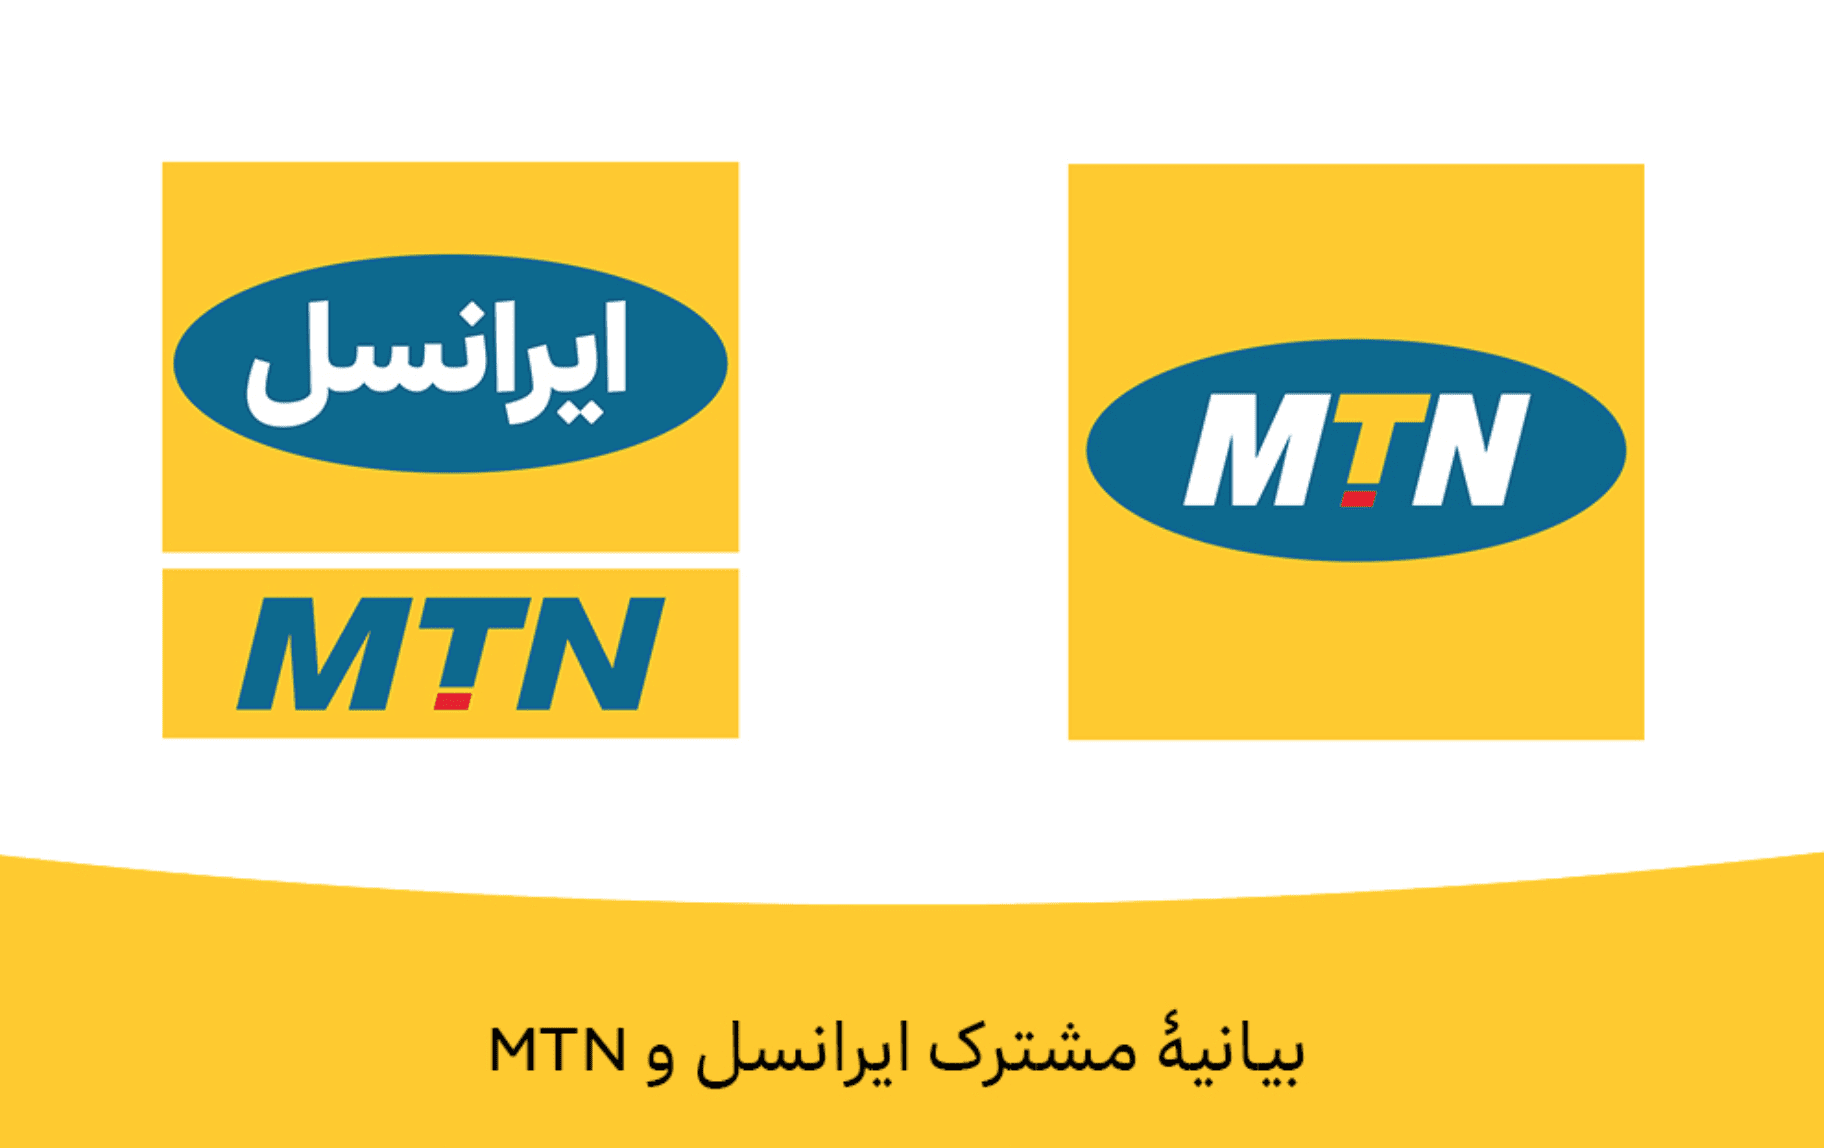 بیانیه مشترک MTN و ایرانسل: برنامه فوری برای خروج MTN از بازار ایران وجود ندارد